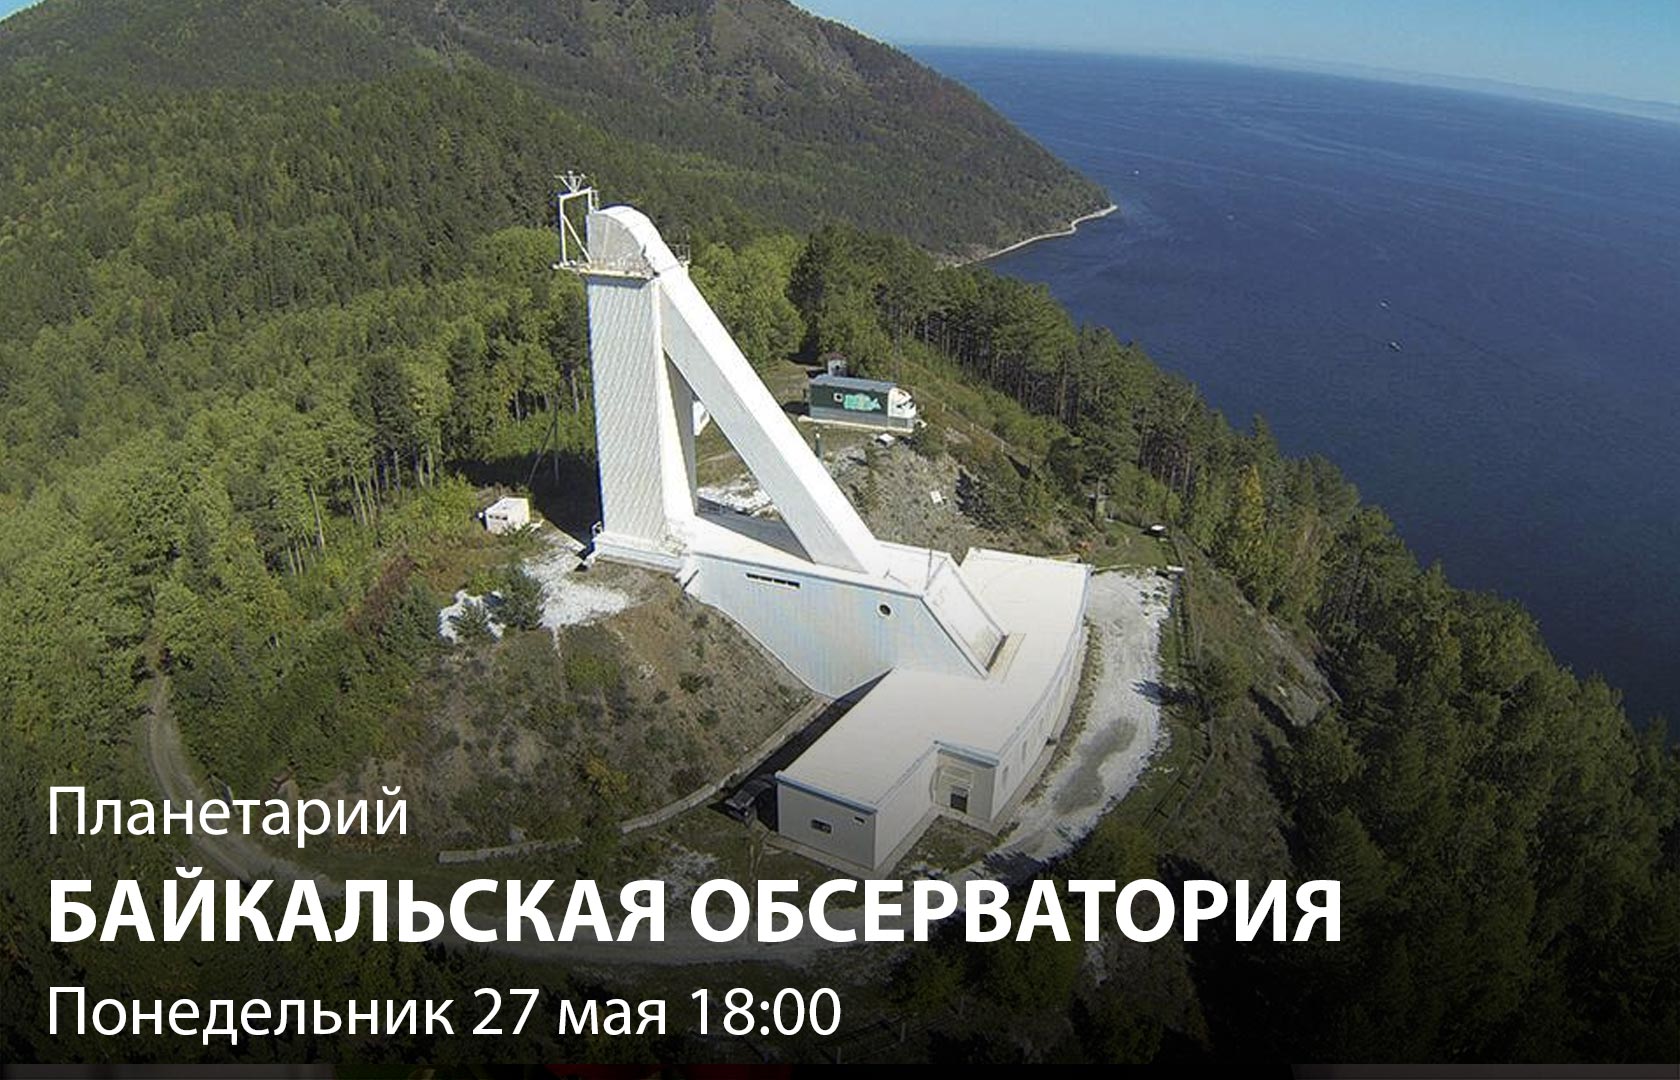 Планетарий. Байкальская обсерватория